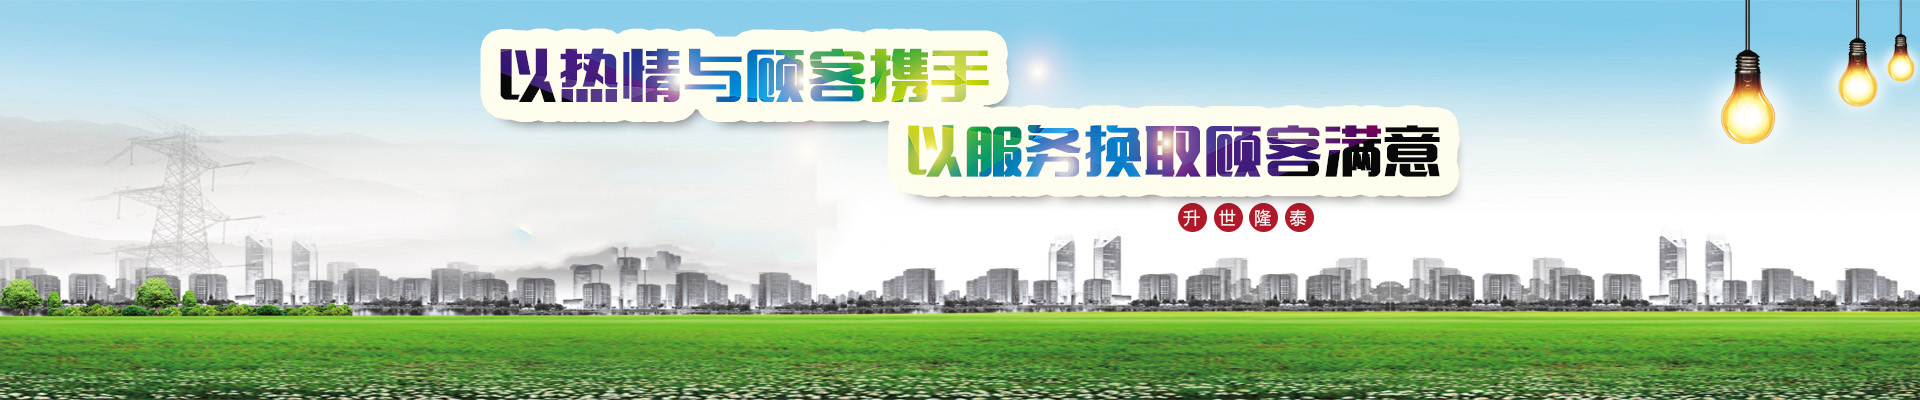 ◆宁◆夏(Xià)升世隆泰电气有限[Xiàn]公司